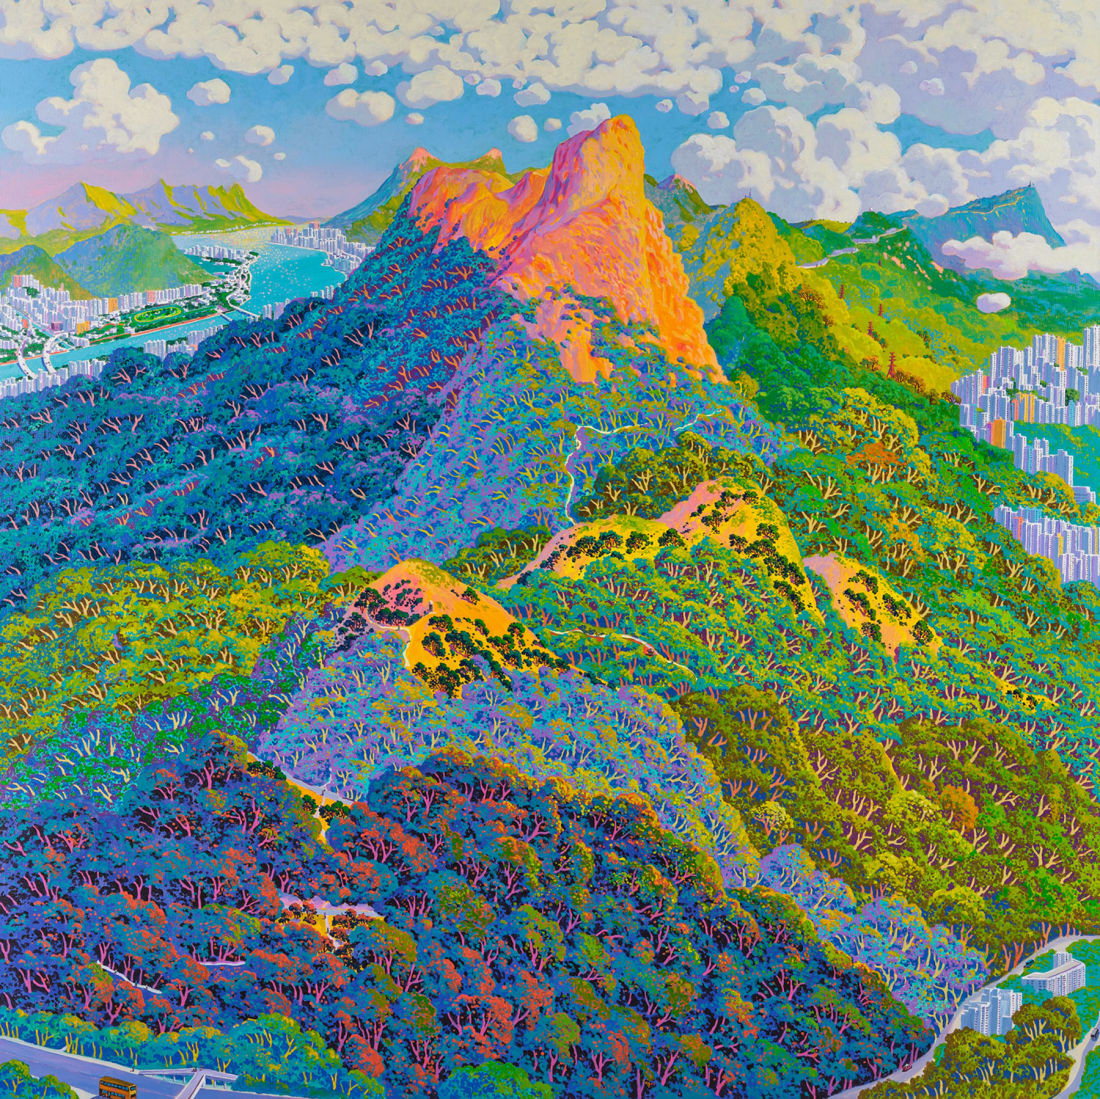 Conheça o pintor que cria paisagens "como Lego"